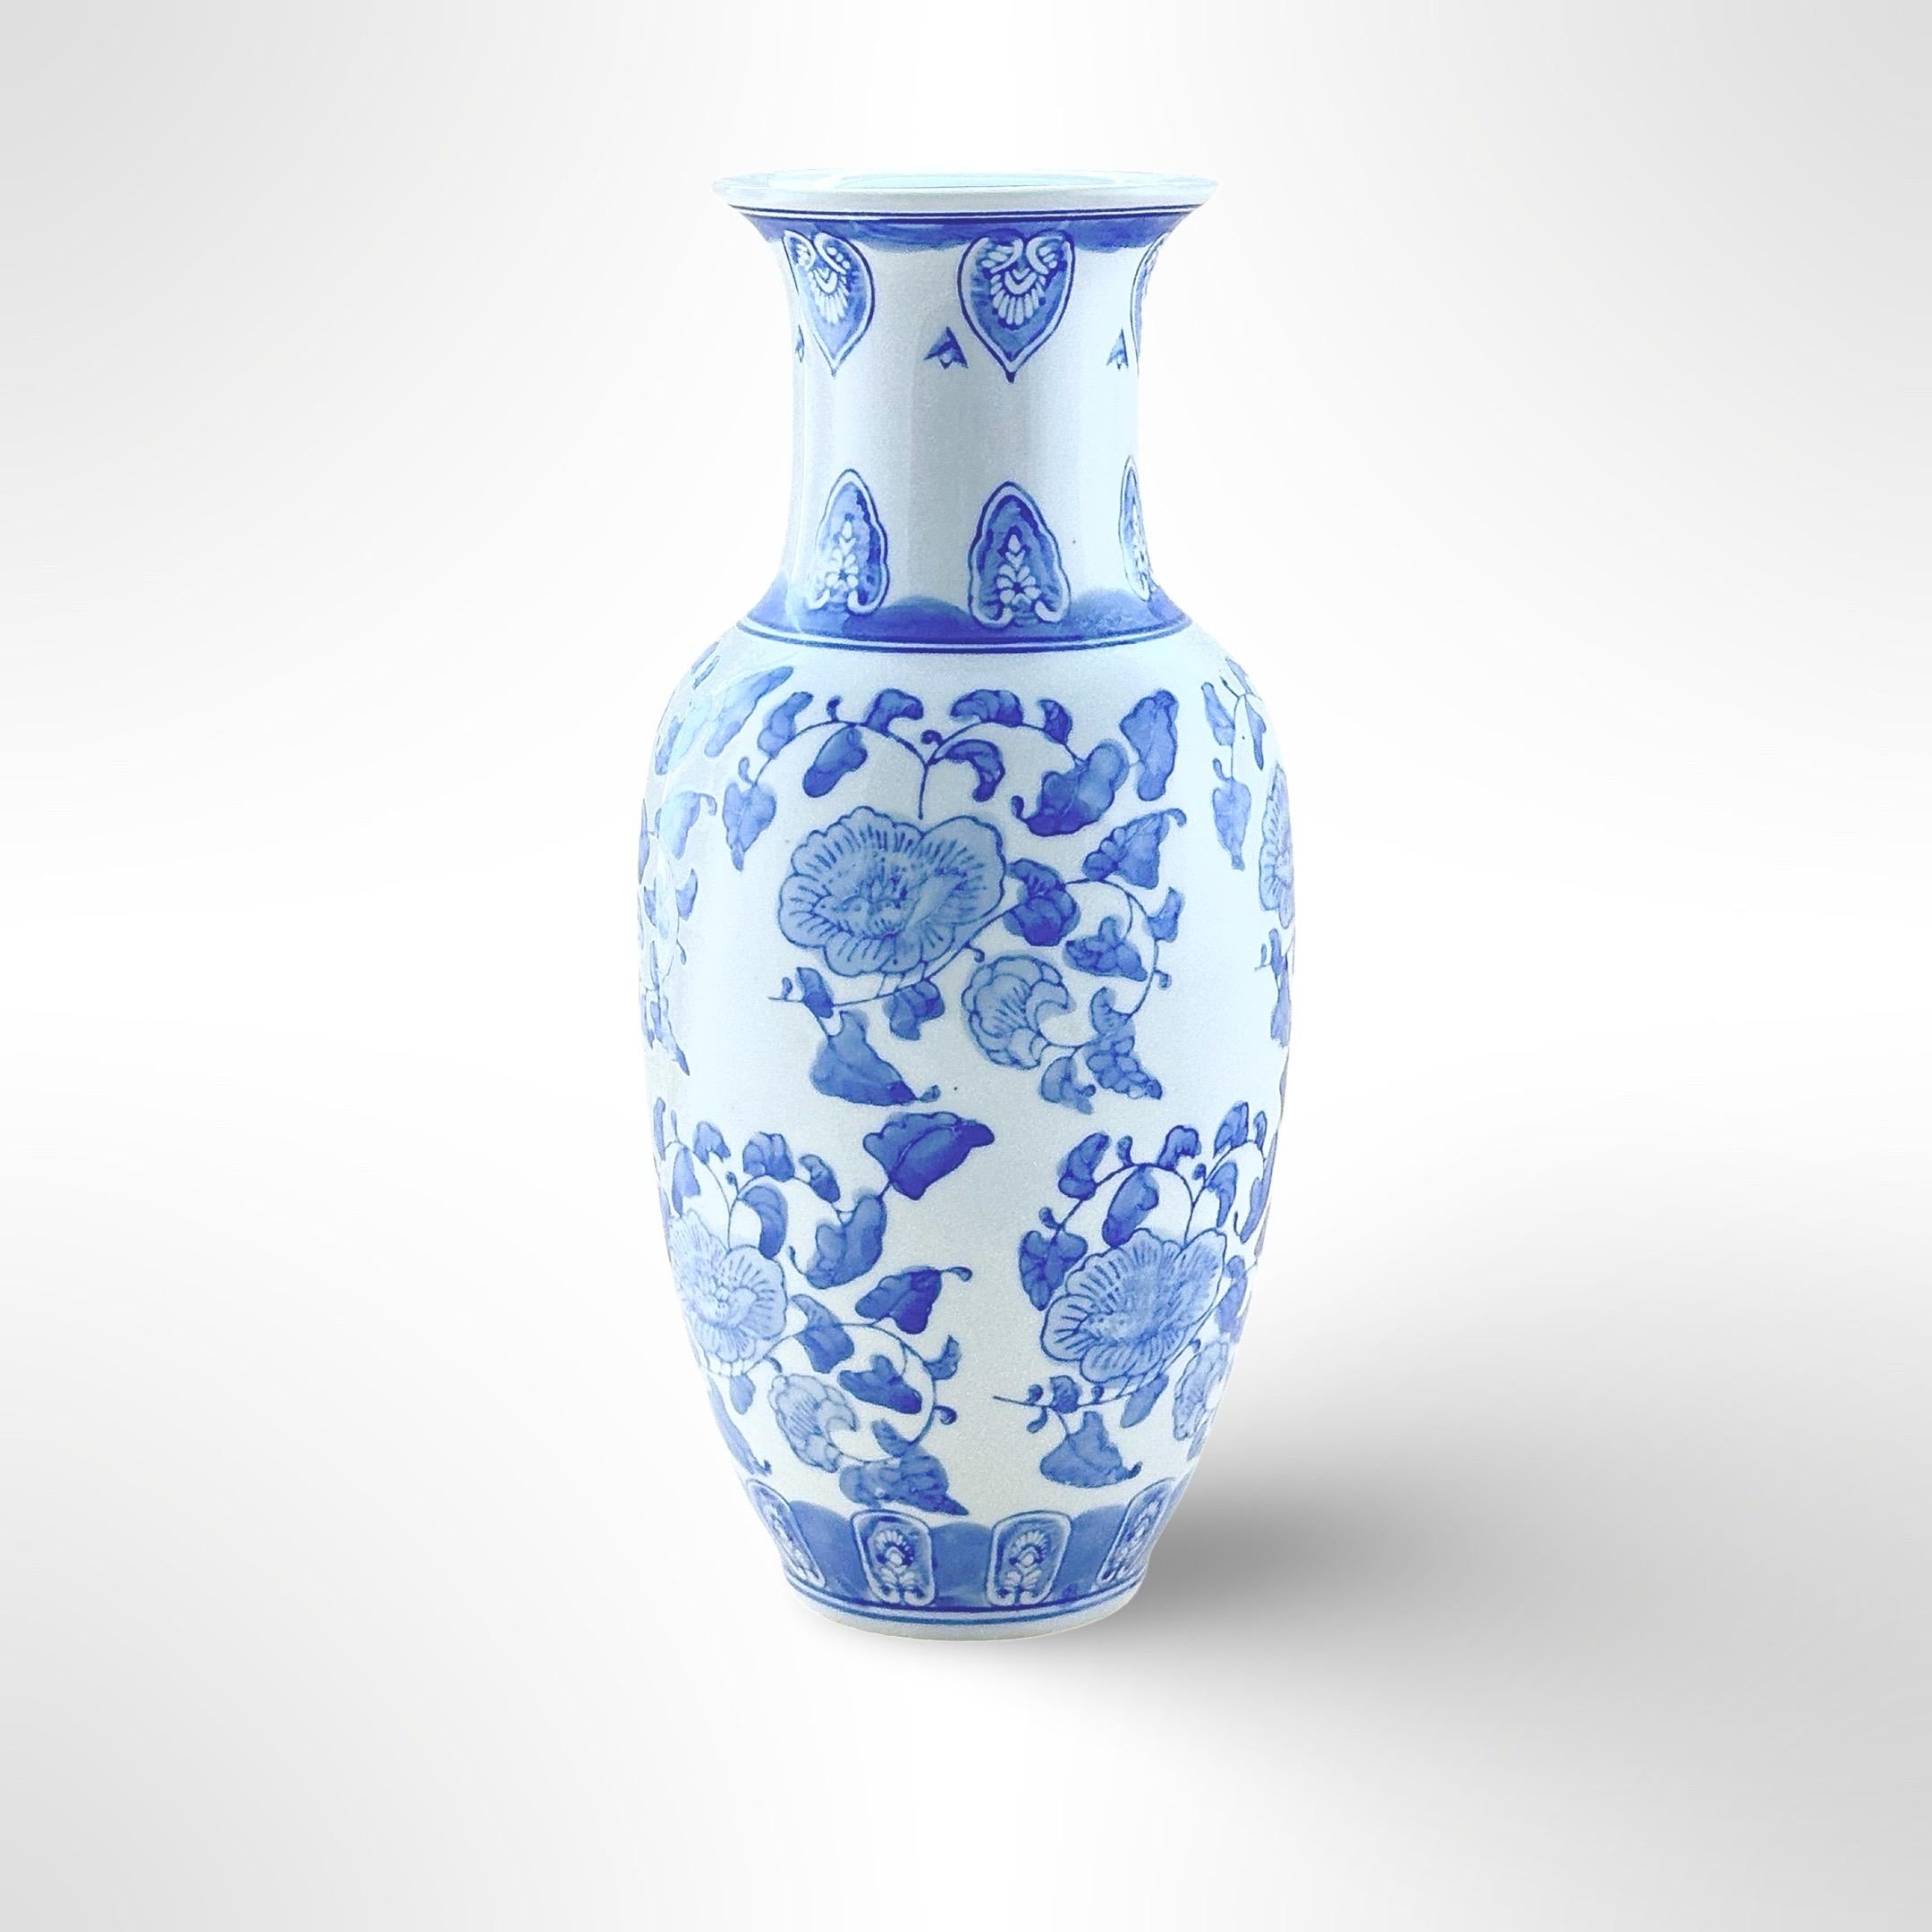 Un vase balustre vintage de style Ming. Créée vers le milieu ou la seconde moitié du 20e siècle en Chine. 

Une représentation classique de la porcelaine émaillée bleue et blanche, très révérée, fabriquée sous la dynastie Ming. Le vase a été